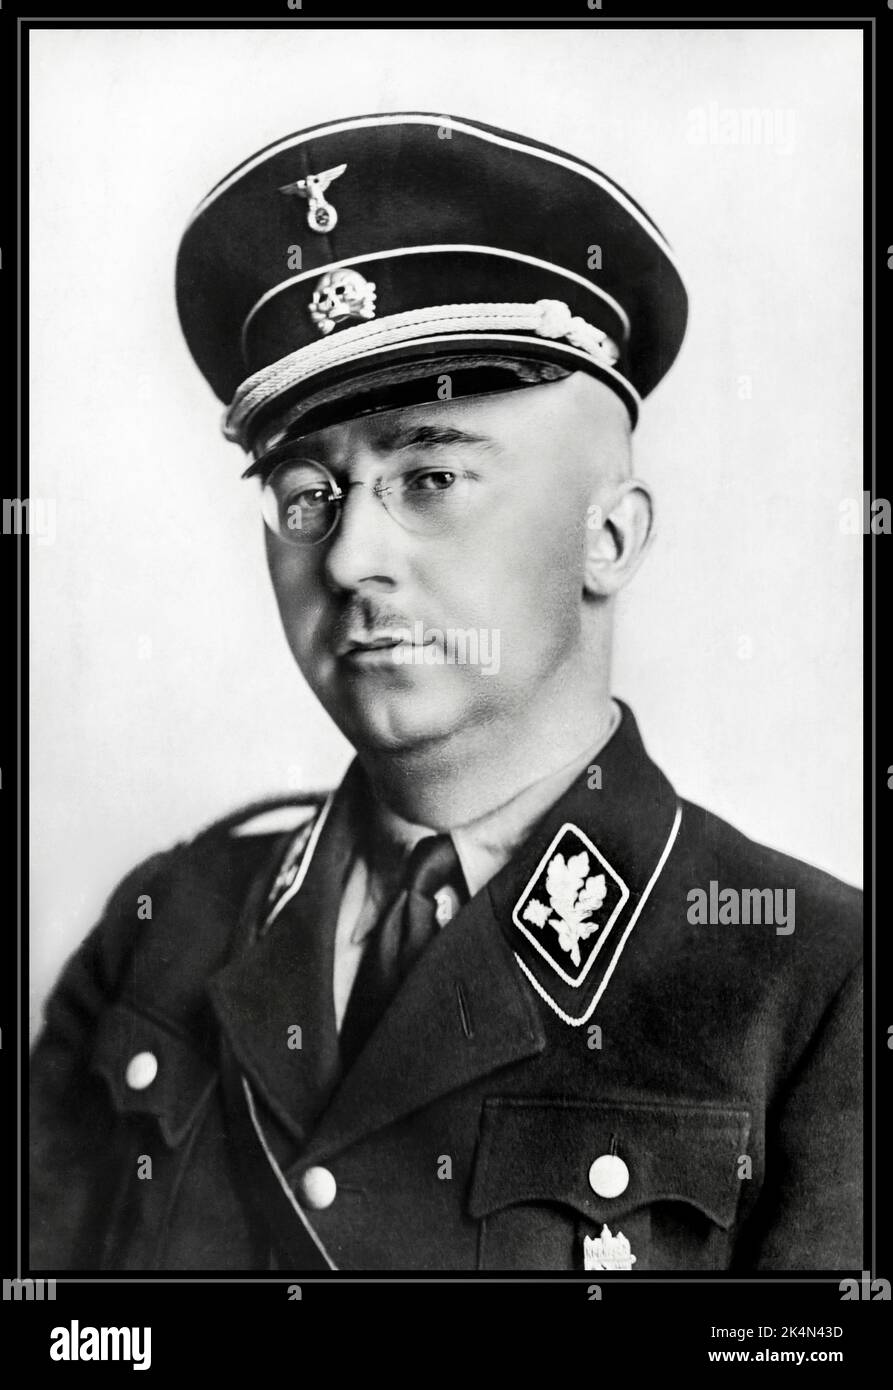 Ritratto ufficiale HIMMLER in uniforme SS. 1938 Heinrich Luitpold Himmler era Reichsführer dello Schutzstaffel e un membro di spicco del partito nazista di Germania. Himmler era uno degli uomini più potenti della Germania nazista e un architetto principale dell'Olocausto.1940's WW2 Heinrich politico nazionalsocialista tedesco comandante militare nazista polizia segreta. Ha facilitato il genocidio in Europa e nell'est. Suicidio commesso nel 1945 Foto Stock